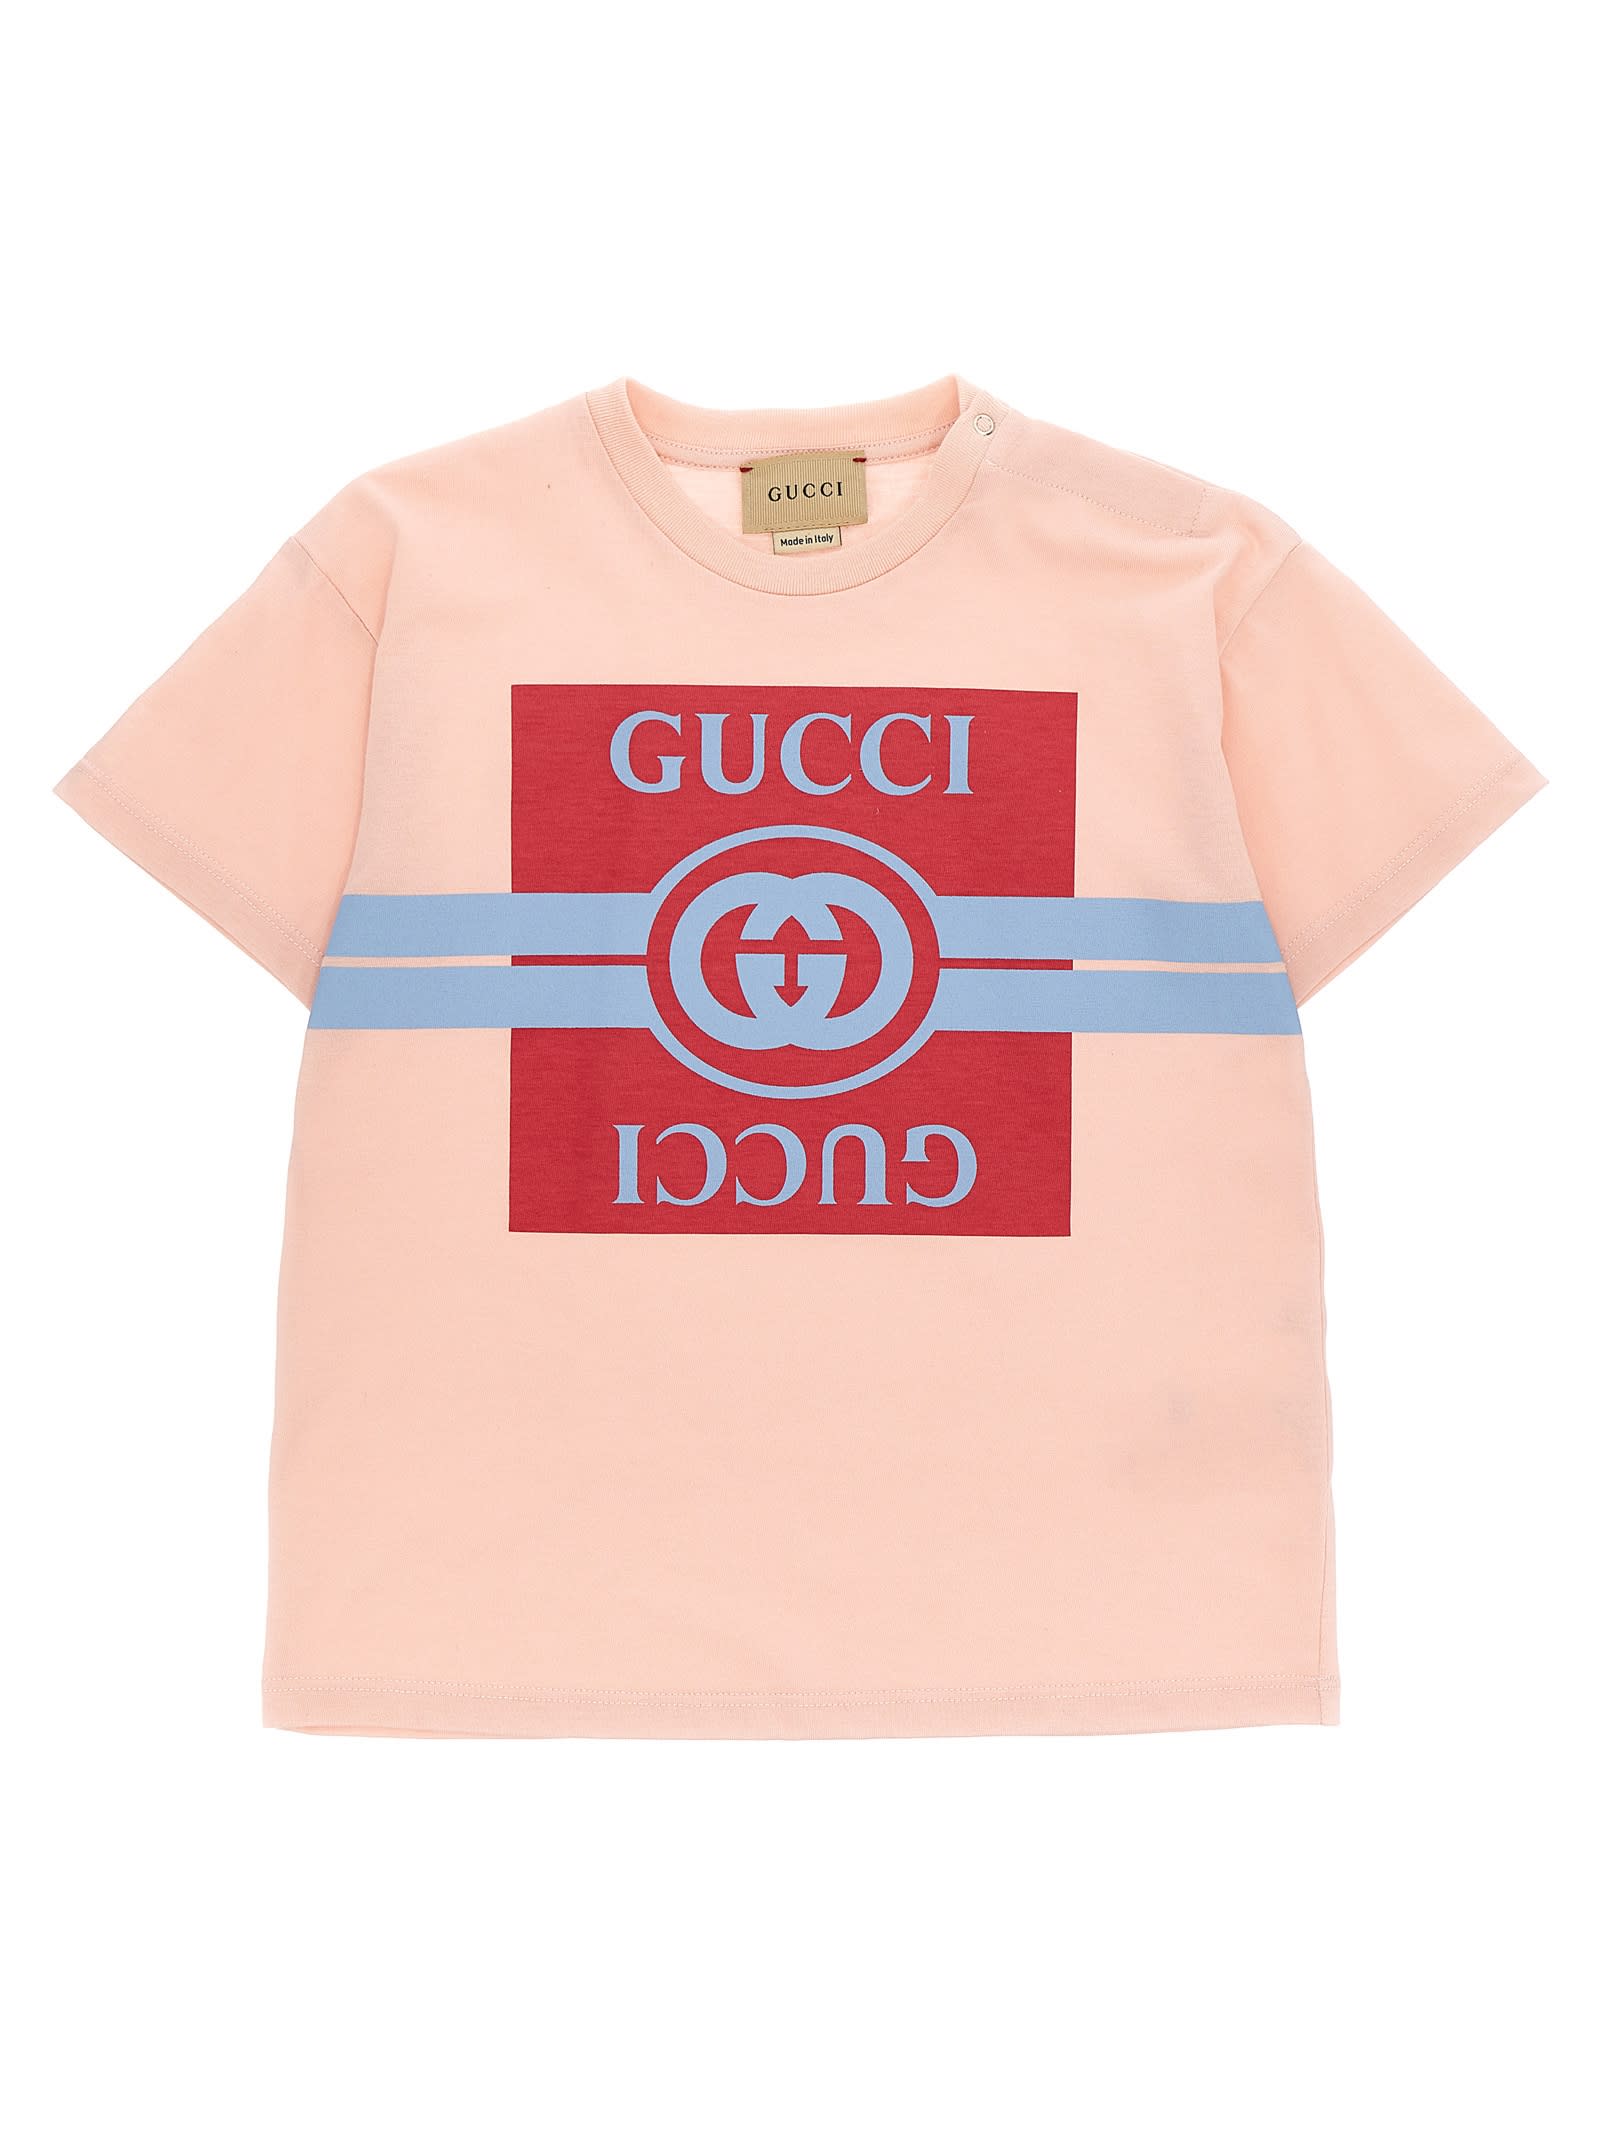 Gucci Babies' Logo T-shirt In Metallic